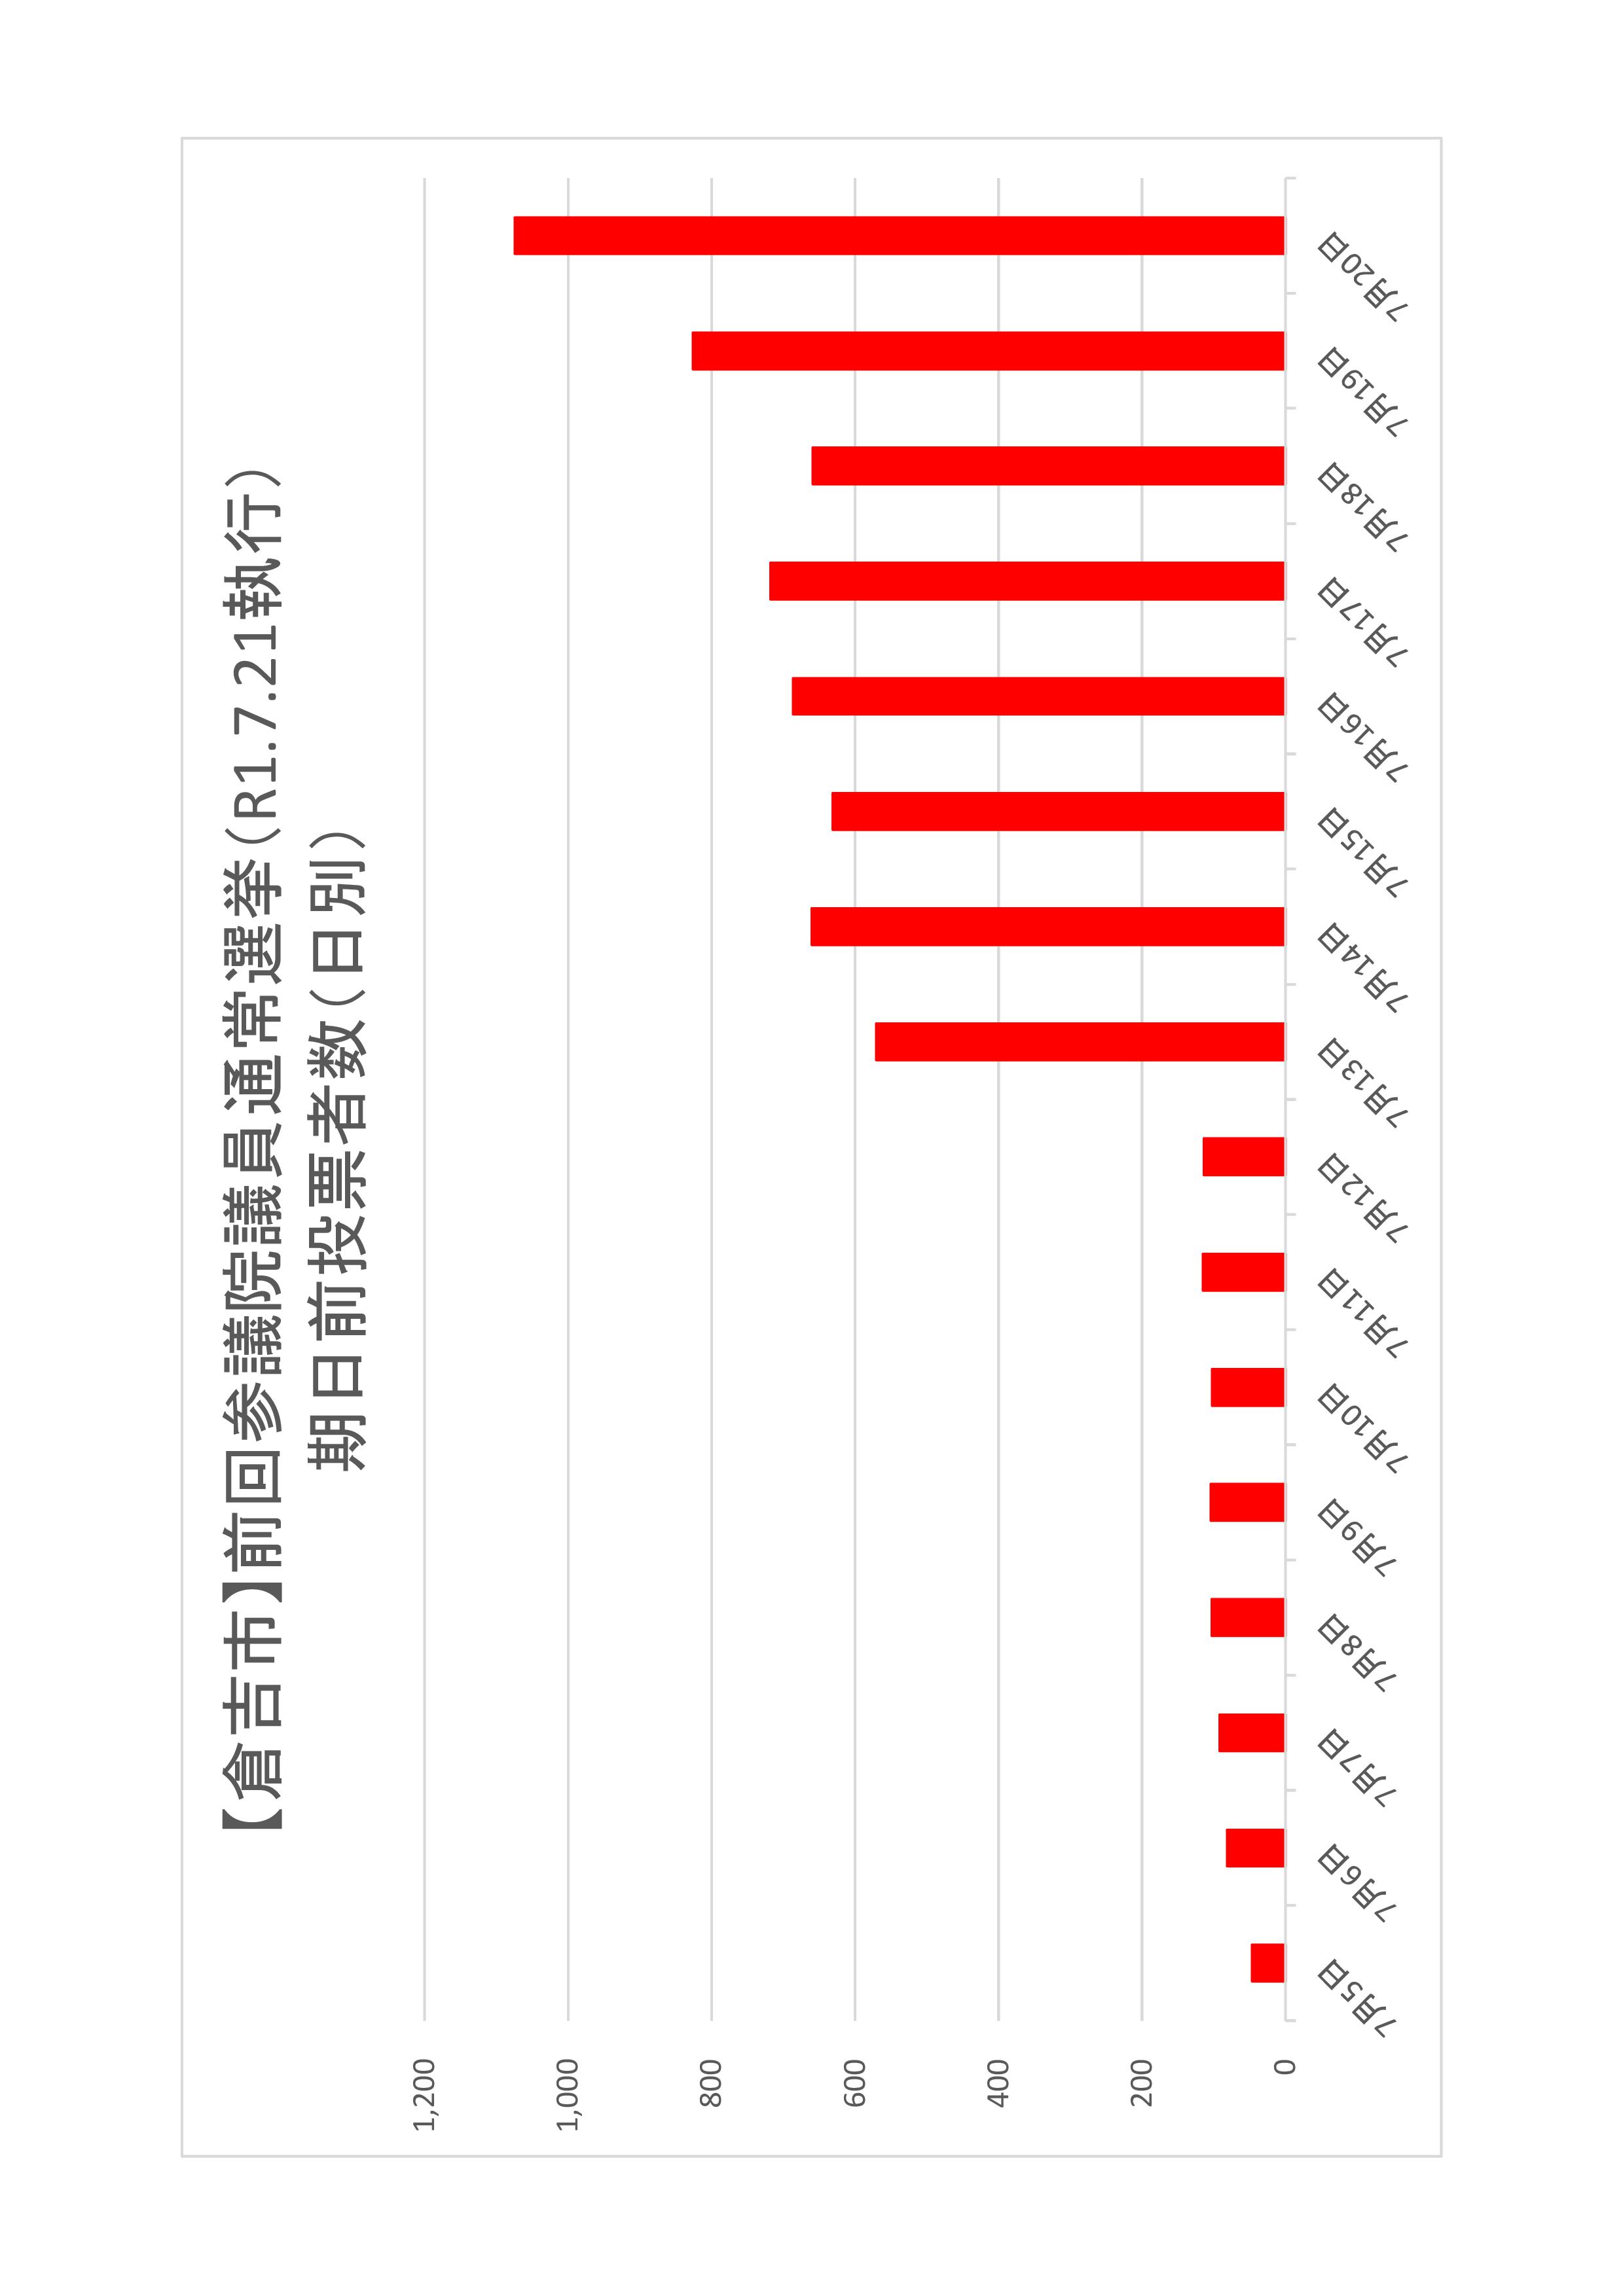 倉吉市の日別期日前投票者数のグラフ